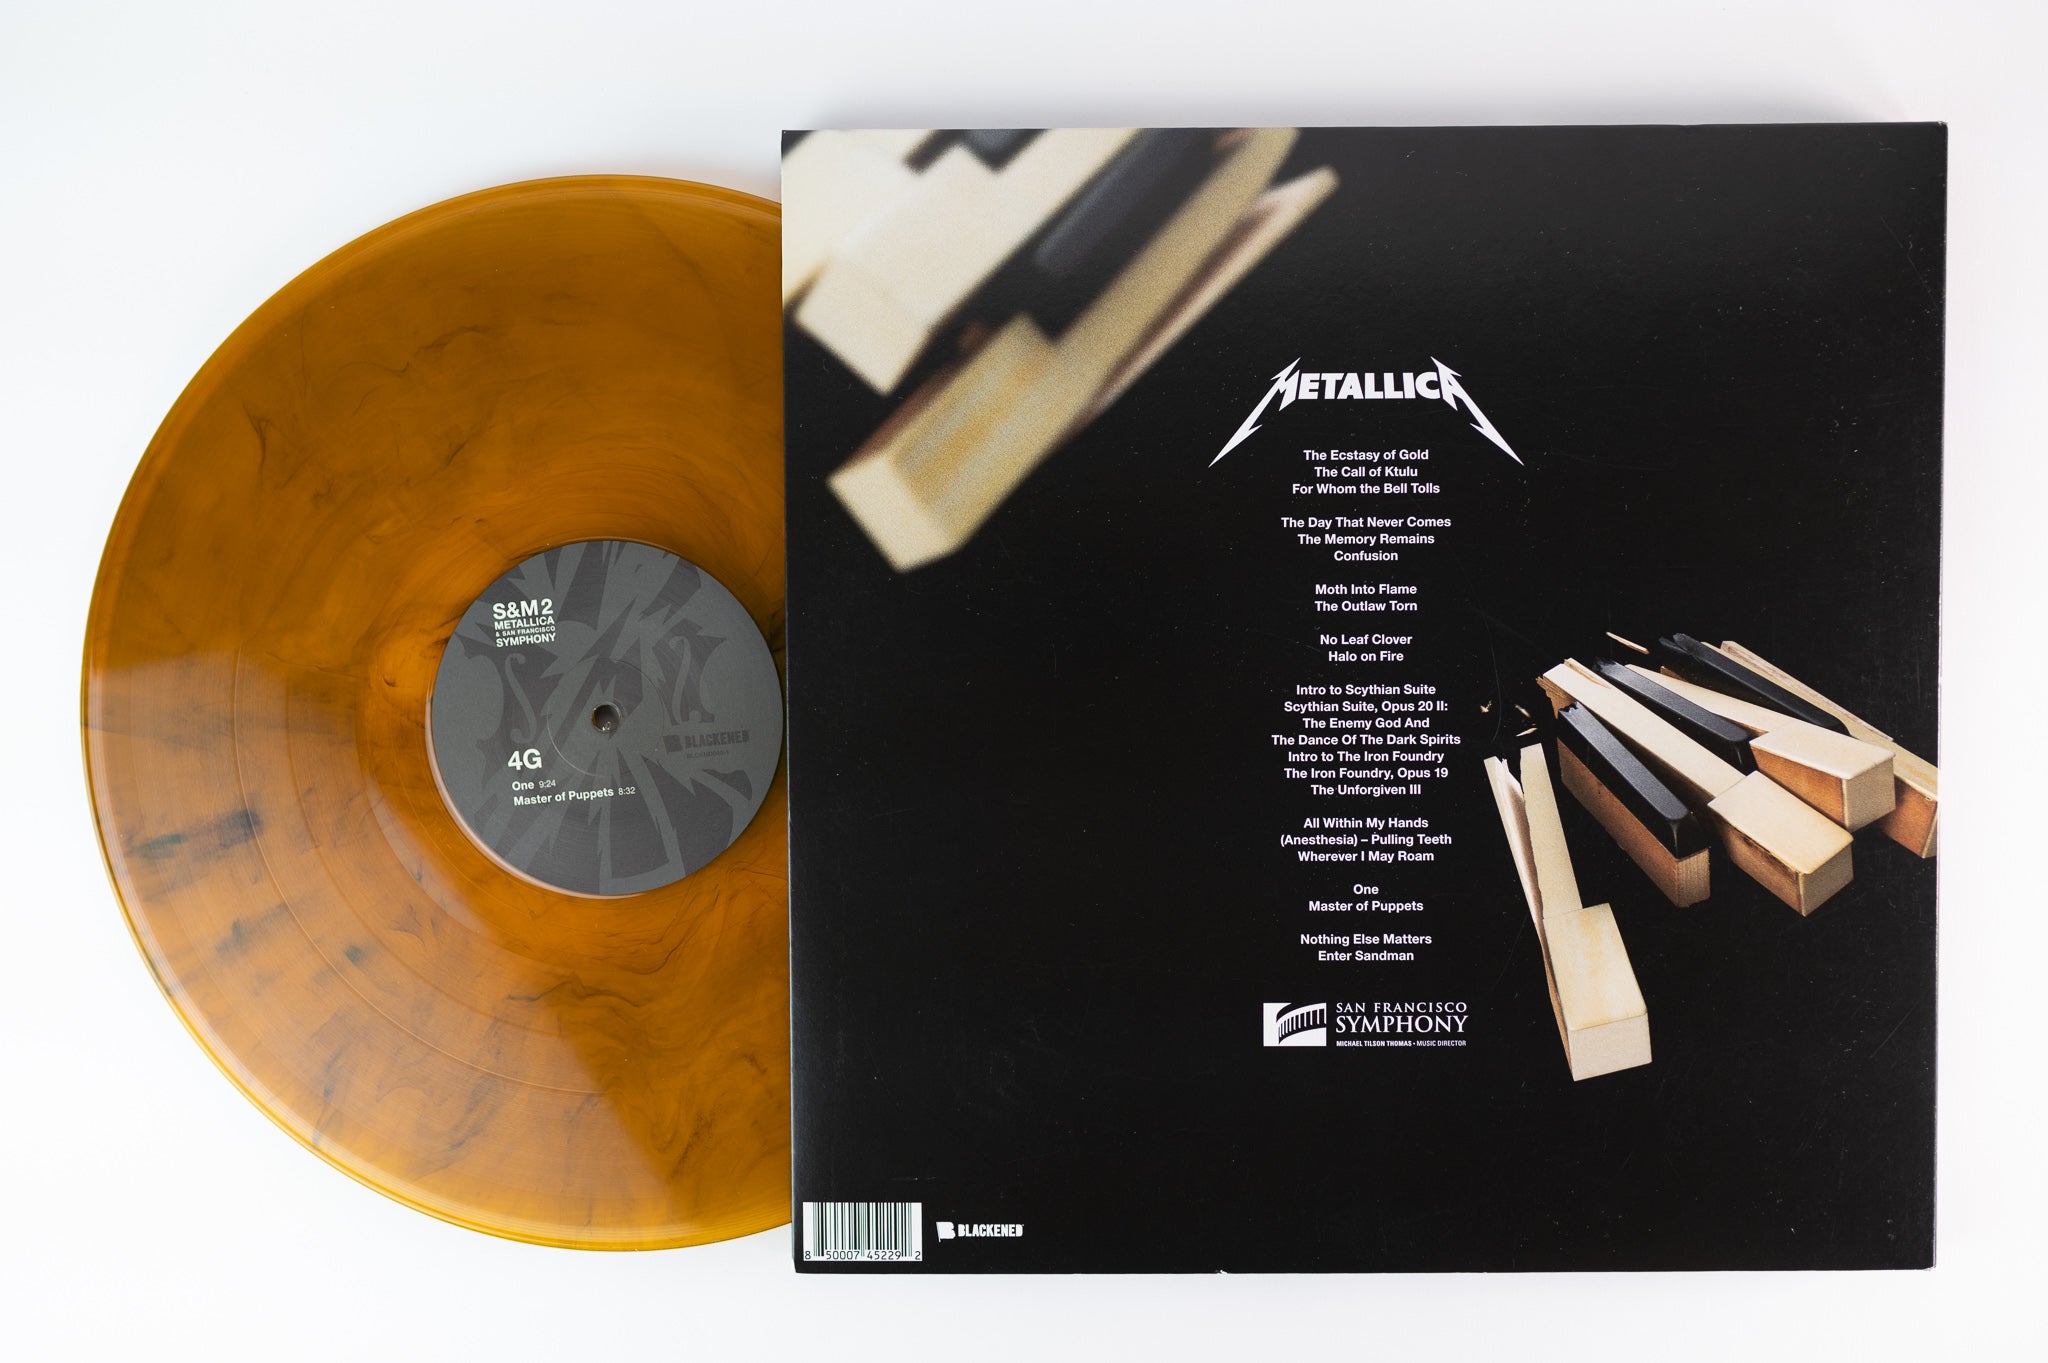 Metallica - S&M2 on Blackened Limited Orange Vinyl – Plaid Room